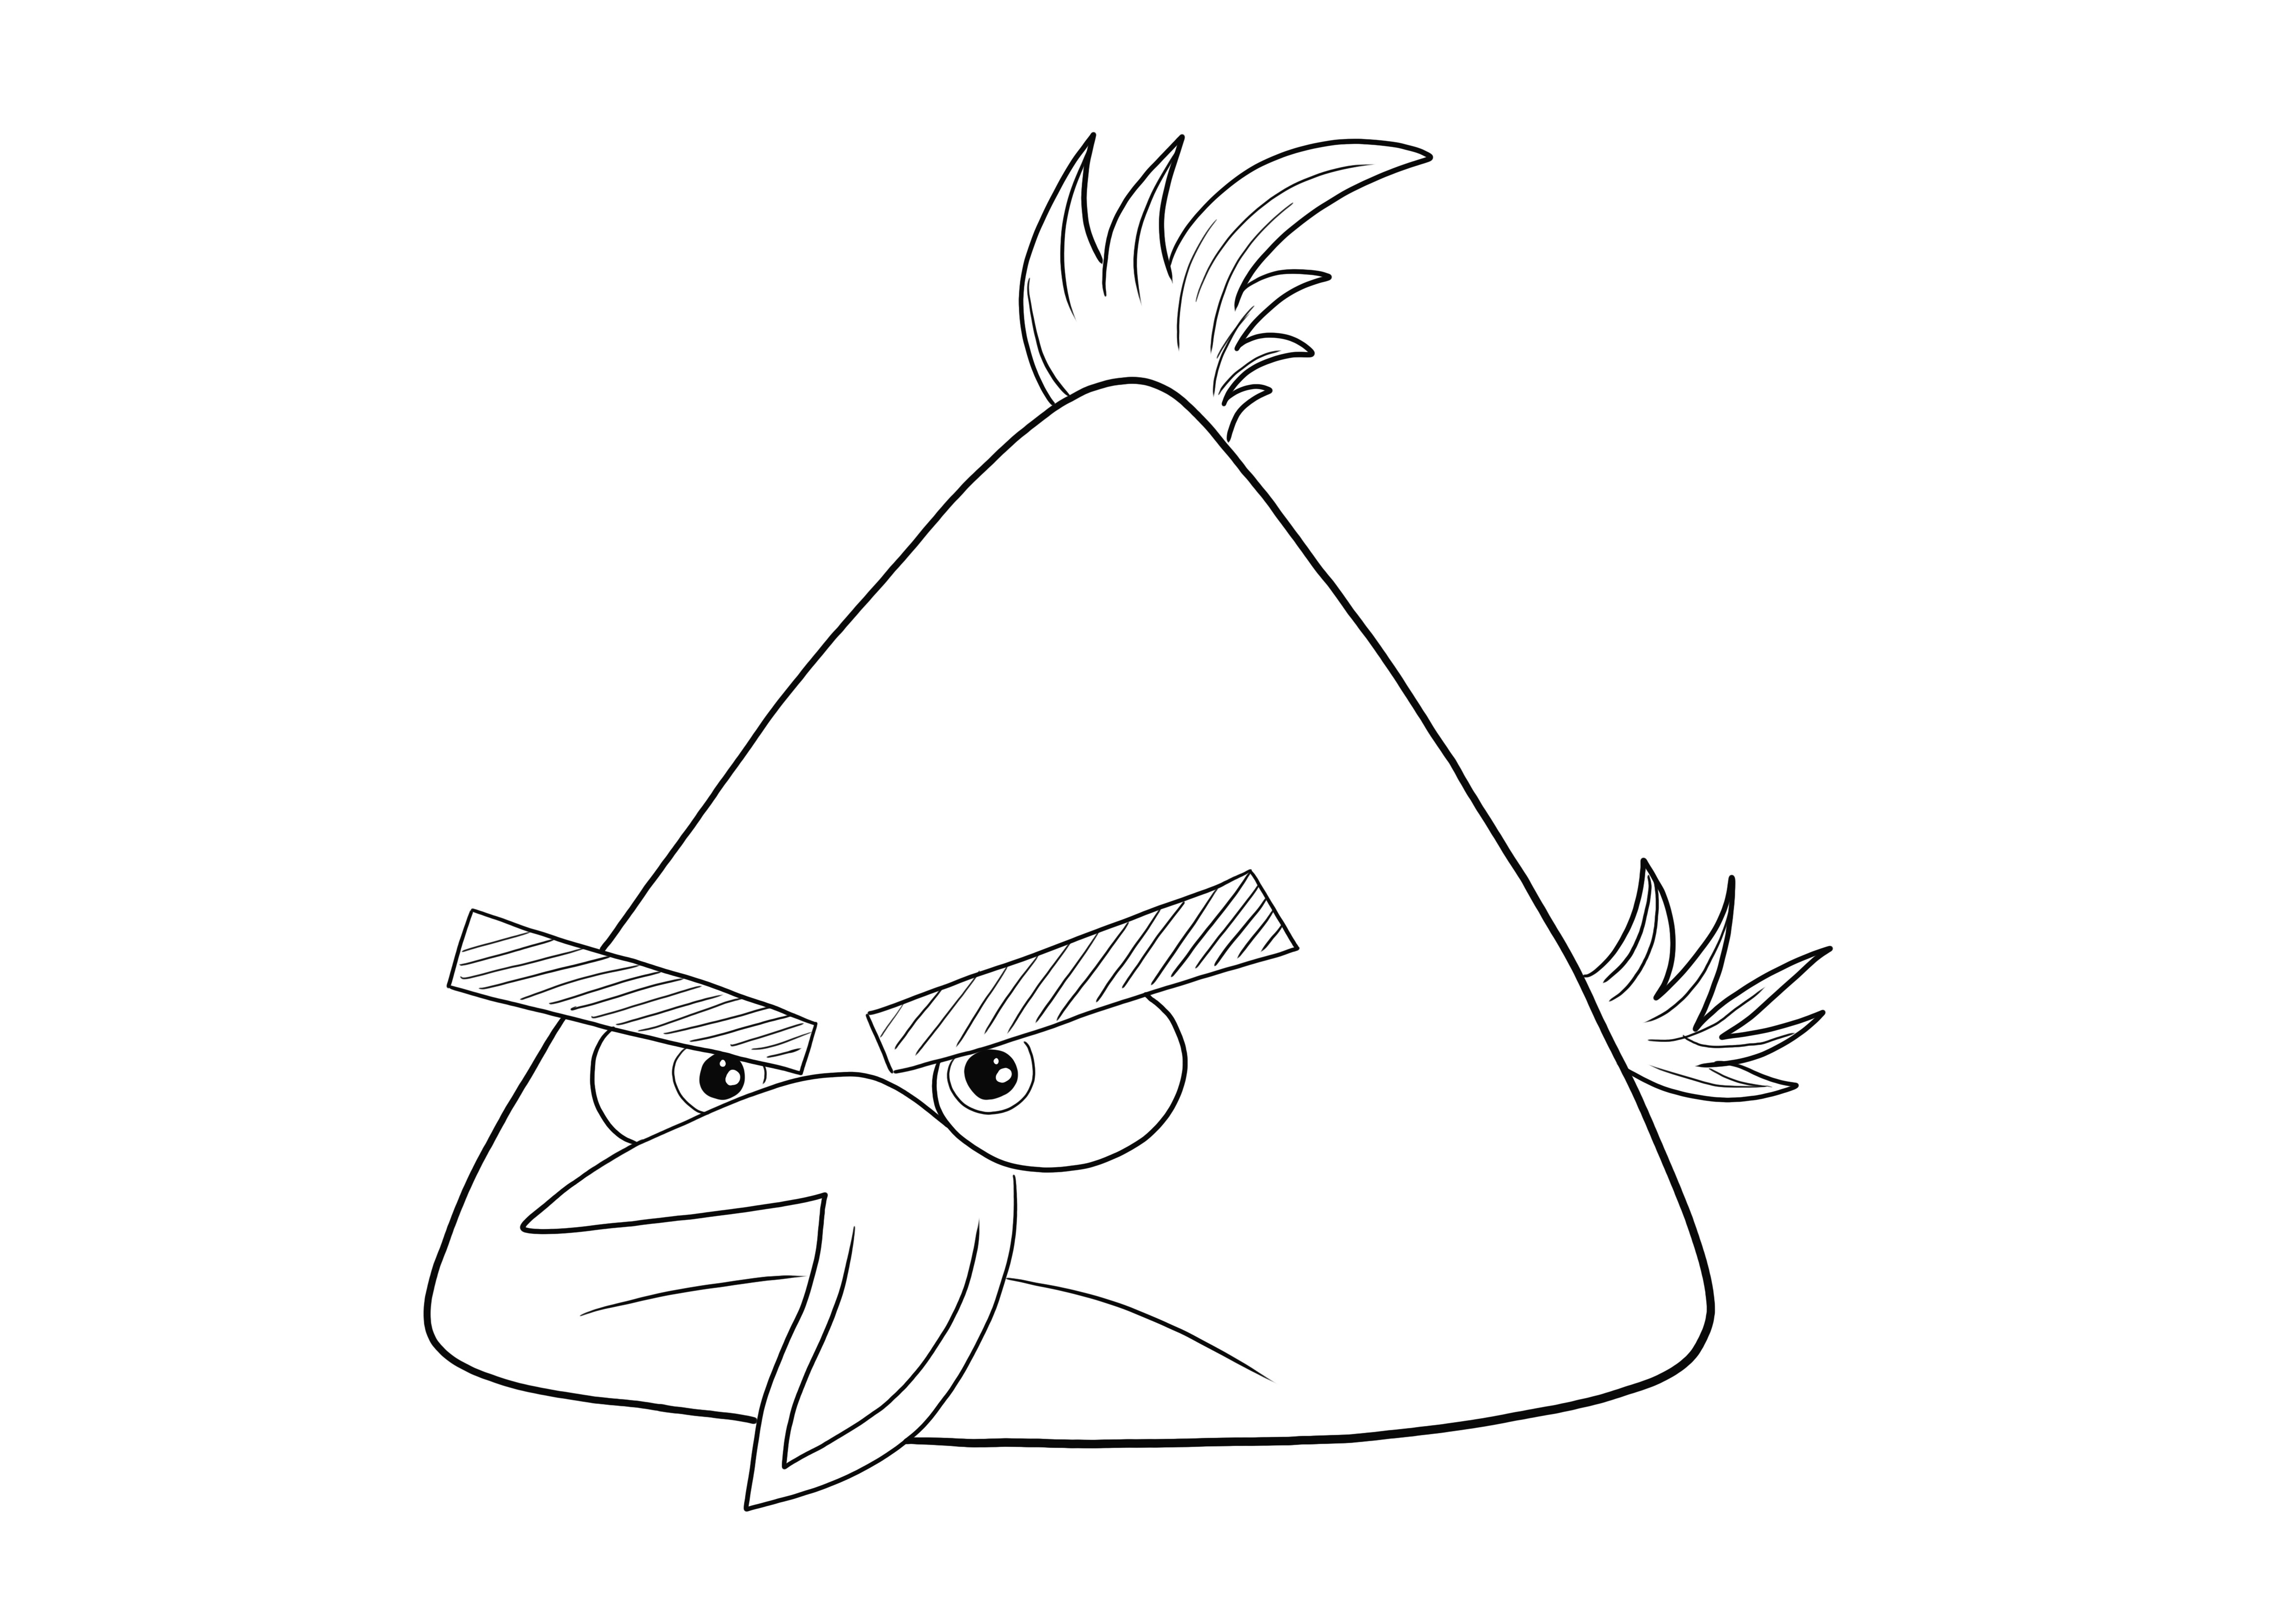 Chuck the Yellow Bird uit Angry Birds-cartoon gratis af te drukken en kleurenafbeelding kleurplaat